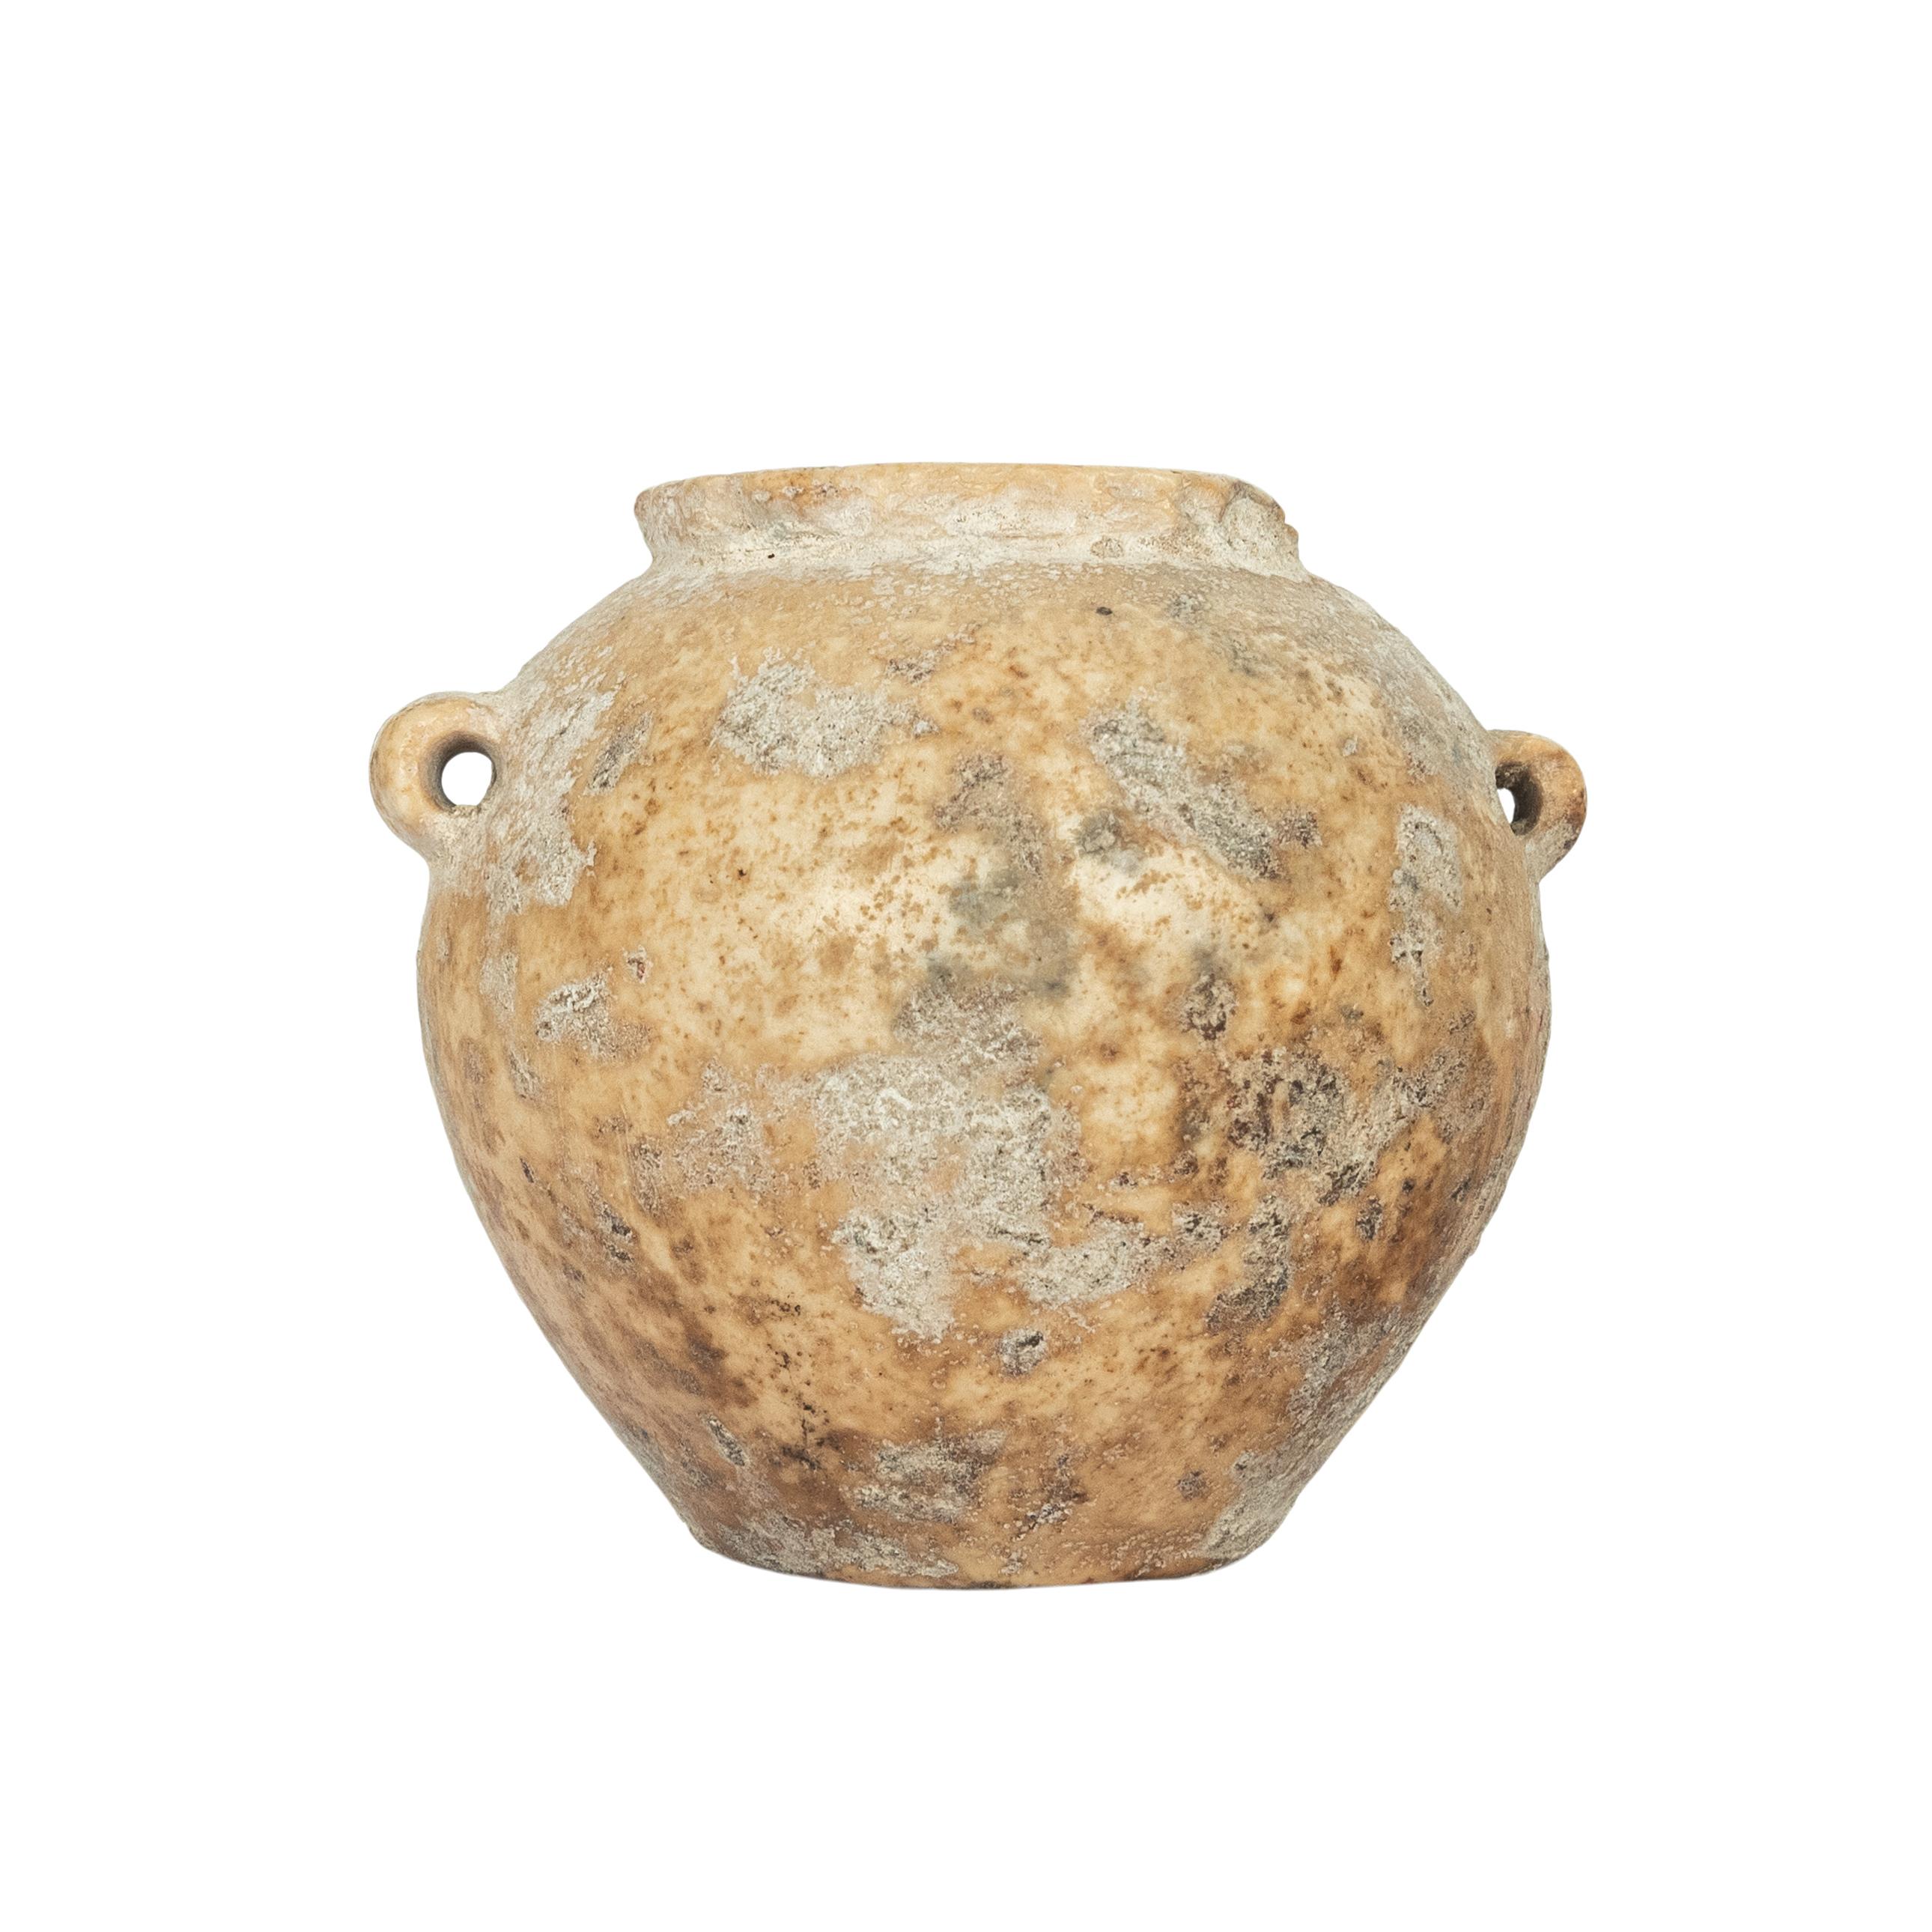 Vase/jarre en pierre de l'Égypte ancienne, Ancien Empire, 2600-2800 avant notre ère.
Il s'agit d'une jarre originale en pierre calcaire datant de l'époque des bâtisseurs de pyramides. Ces récipients étaient sculptés à la main à l'aide de sable et